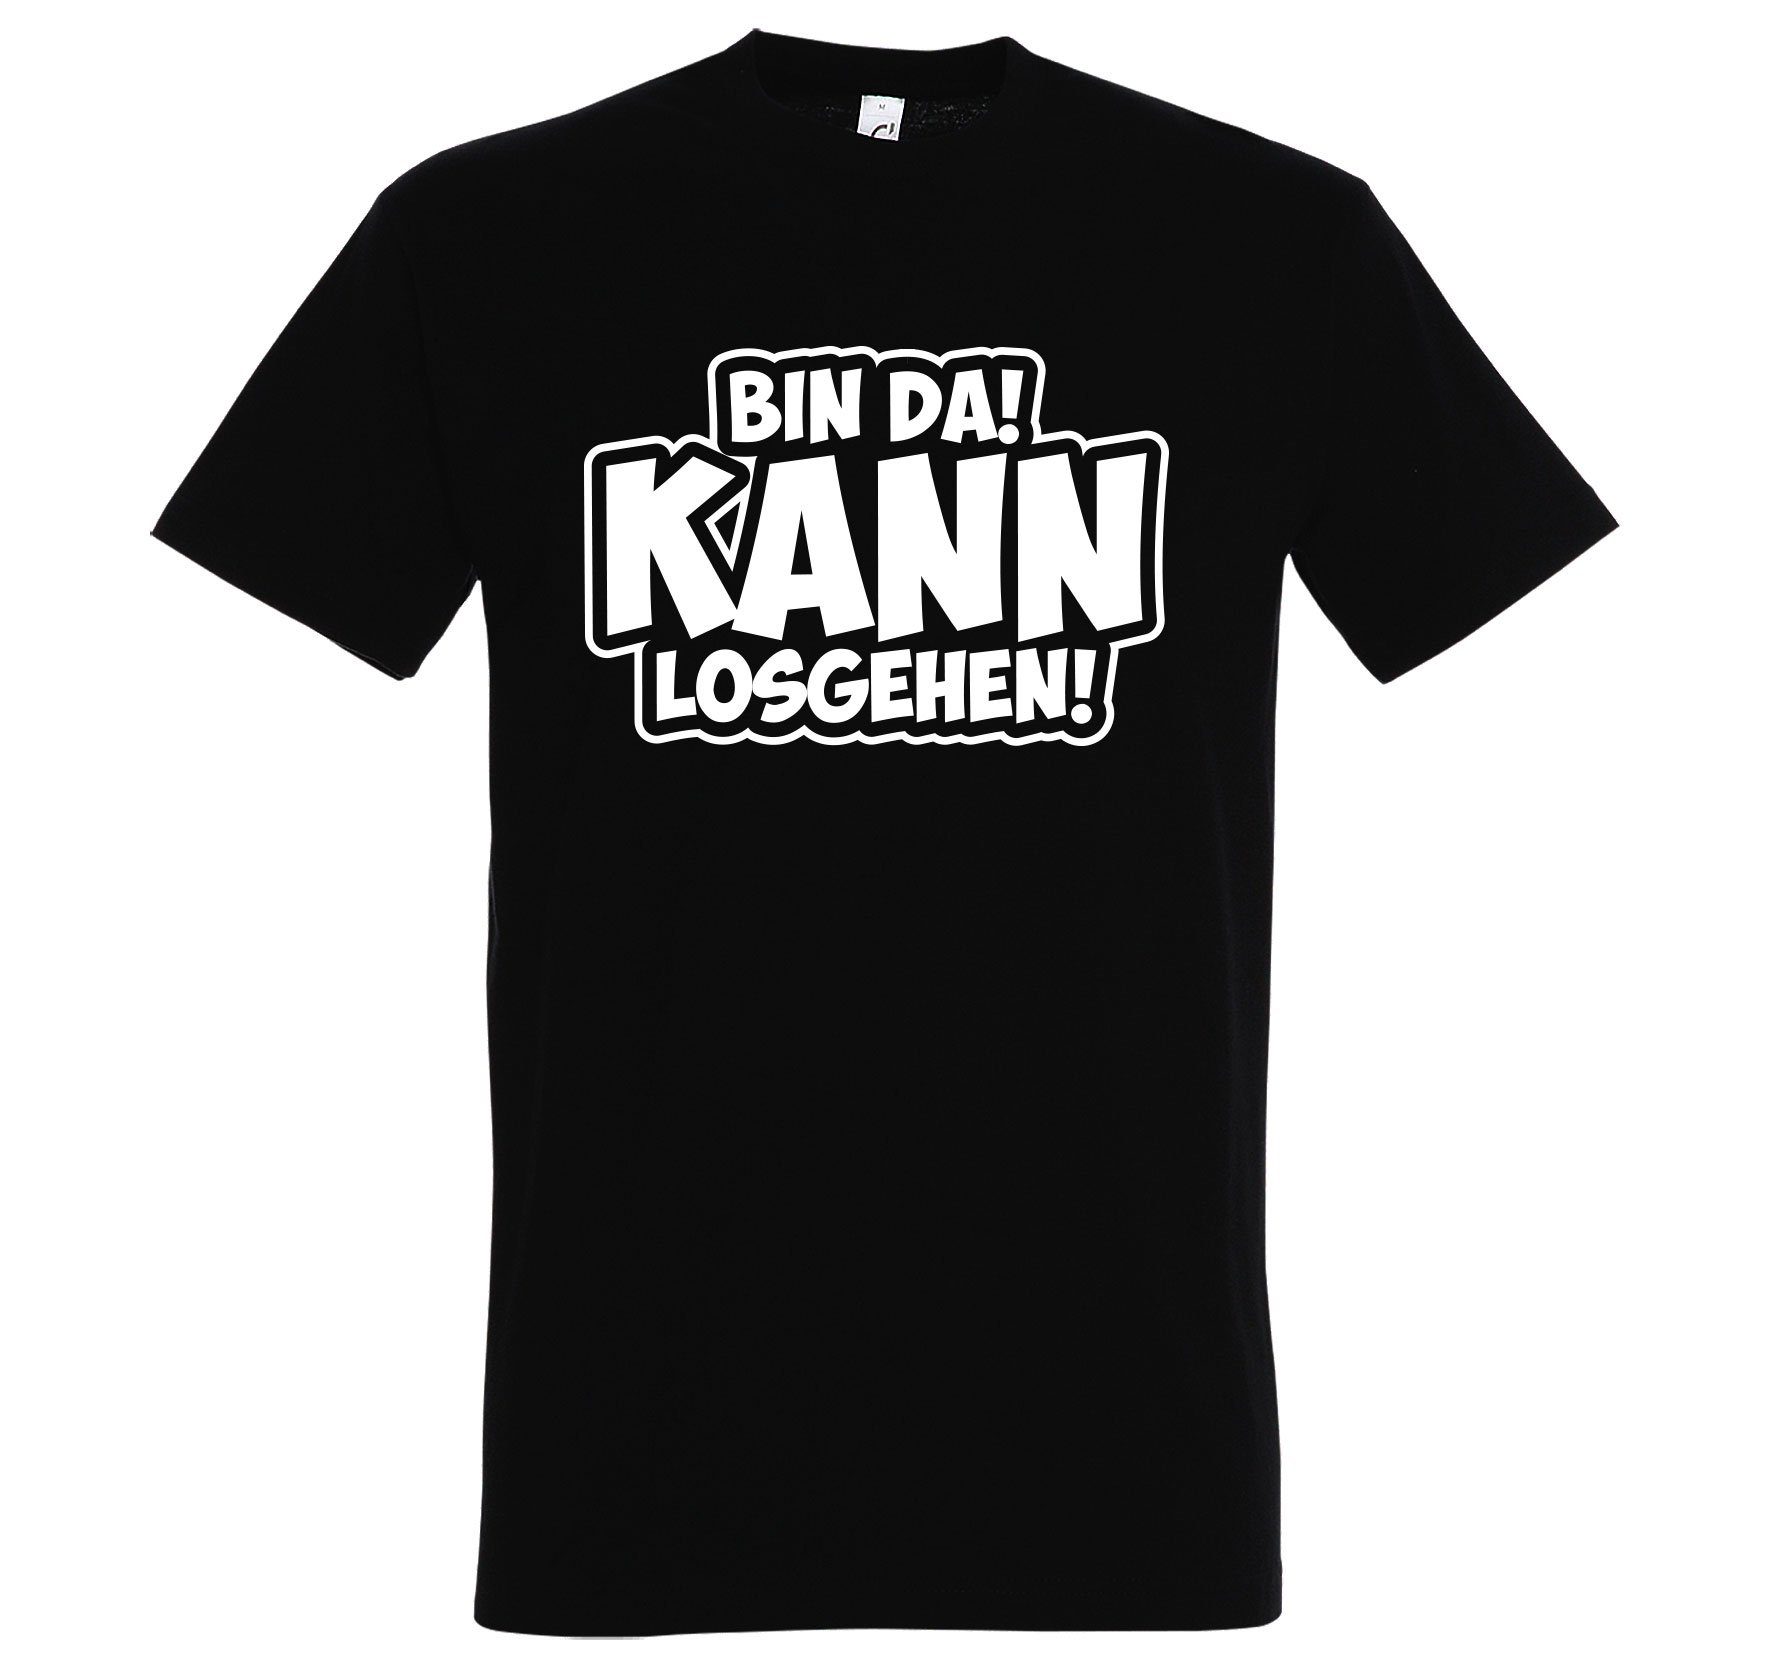 T-Shirt BIN Designz DA! Gehen! Shirt Los mit Motivation Herren Kann Schwarz Youth Spruch